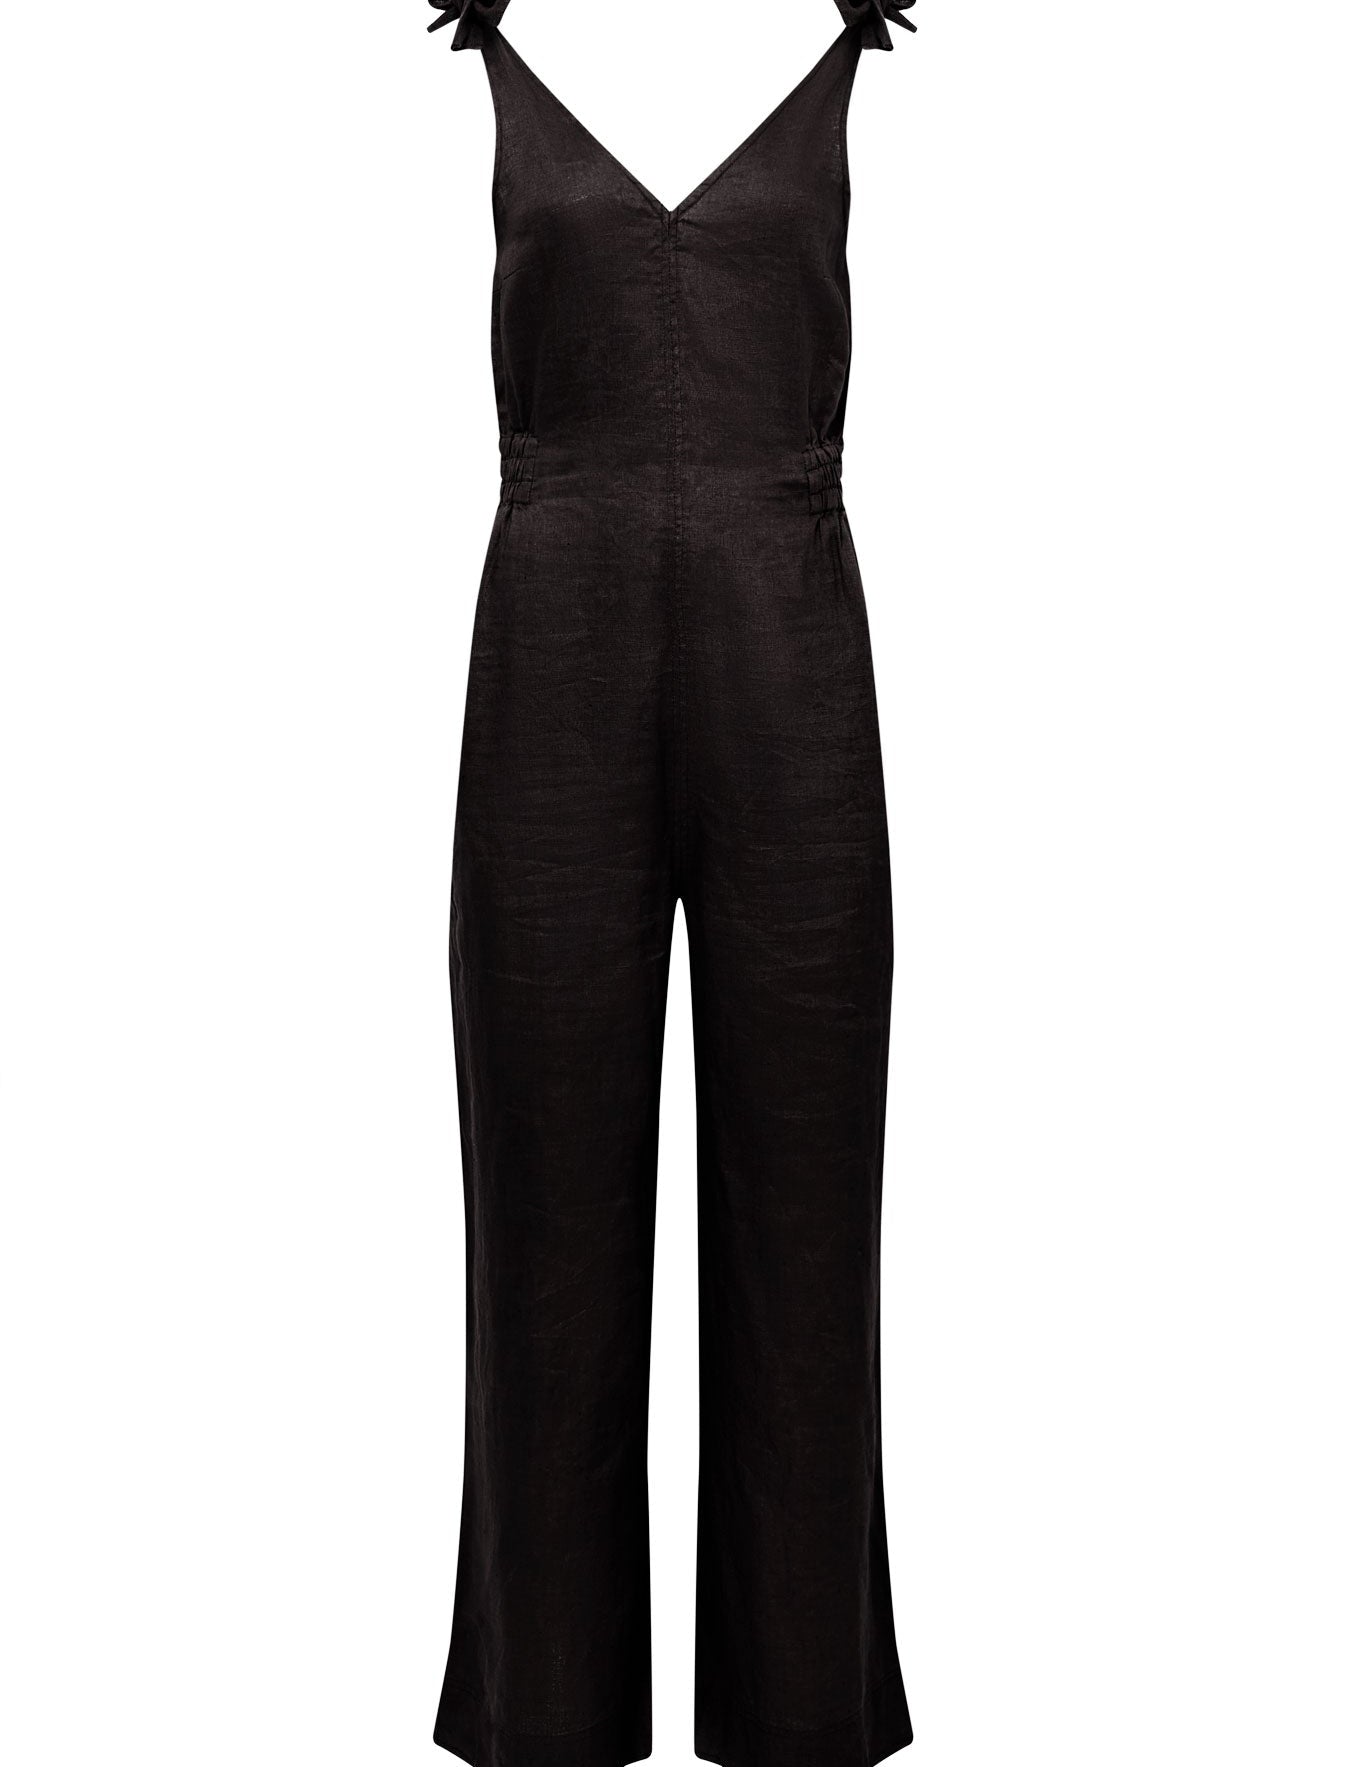 C1-L-41-floss-jumpsuit-black_dec81c81-4112-4928-95c0-ea8cd490e149.jpg